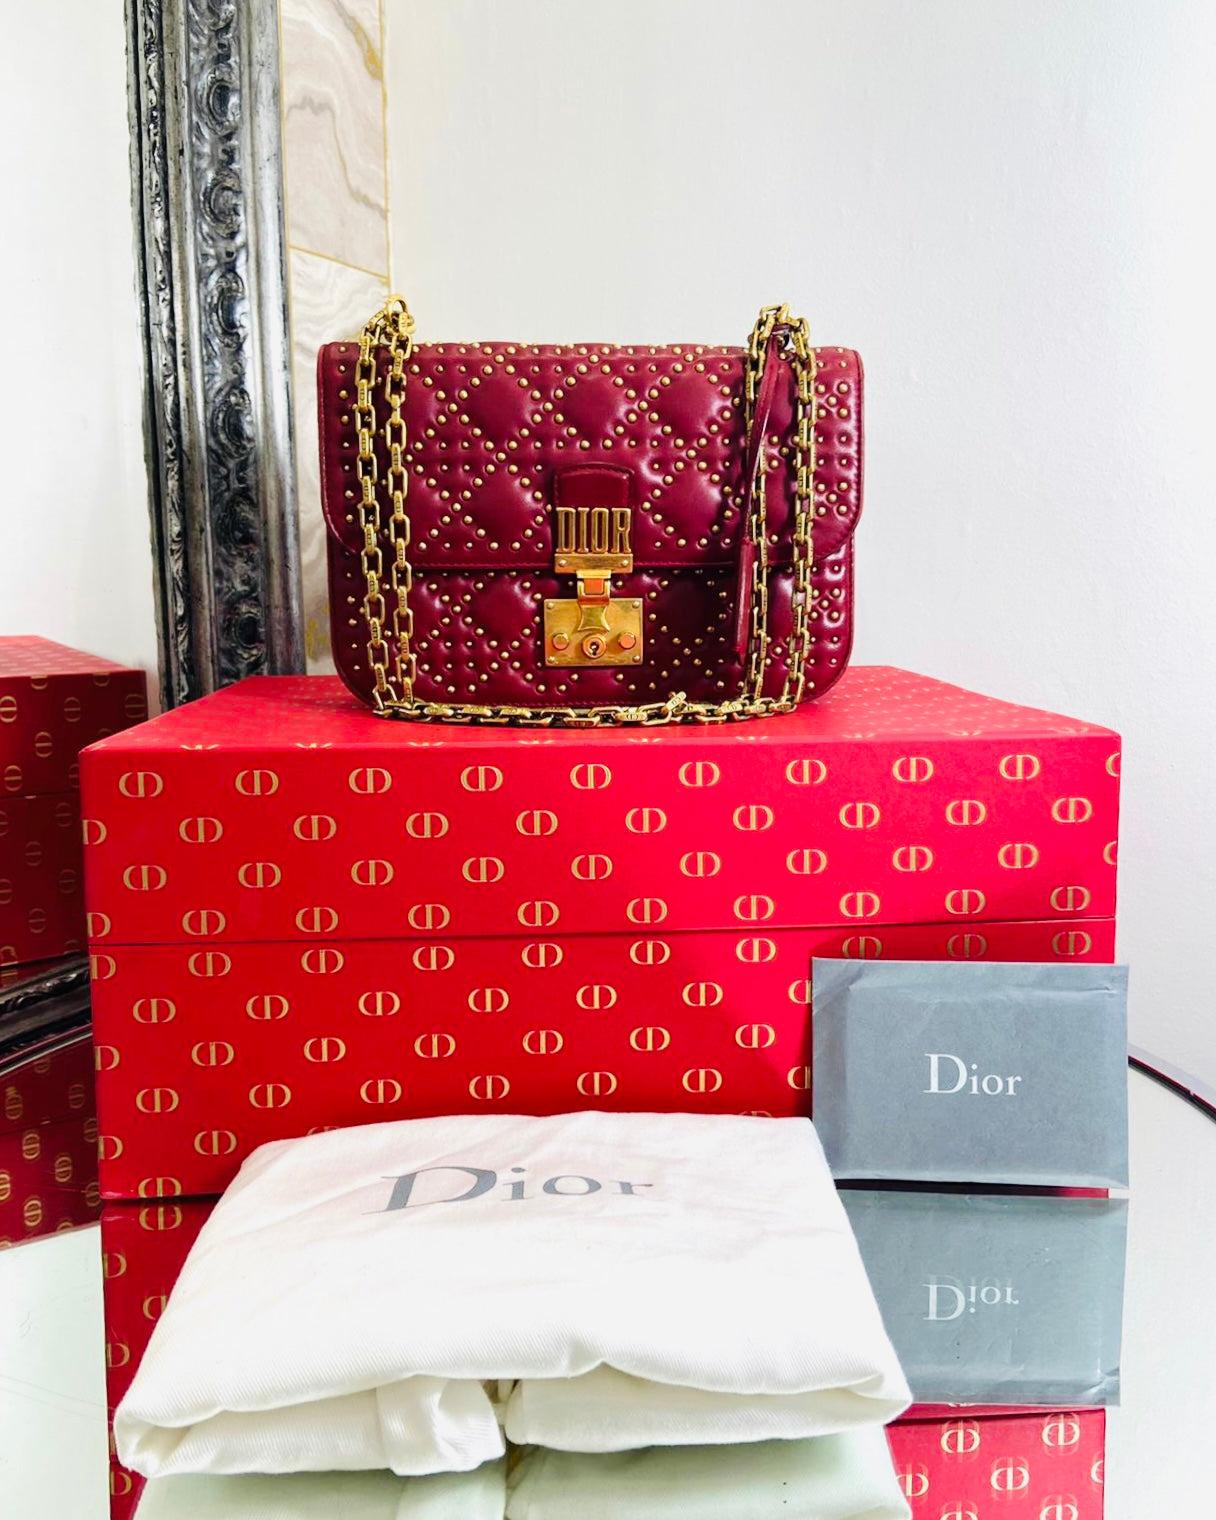 Christian Dior Cannage Dioraddict Beschlagene Tasche - Großes Modell

Rote Crossbody-Tasche aus Leder mit goldenem Nietenbesatz

und gestepptem Körper. Abnehmbare Kette aus goldfarbenem Glied, gealtert

Schulterriemen mit eingravierten Gliedern mit